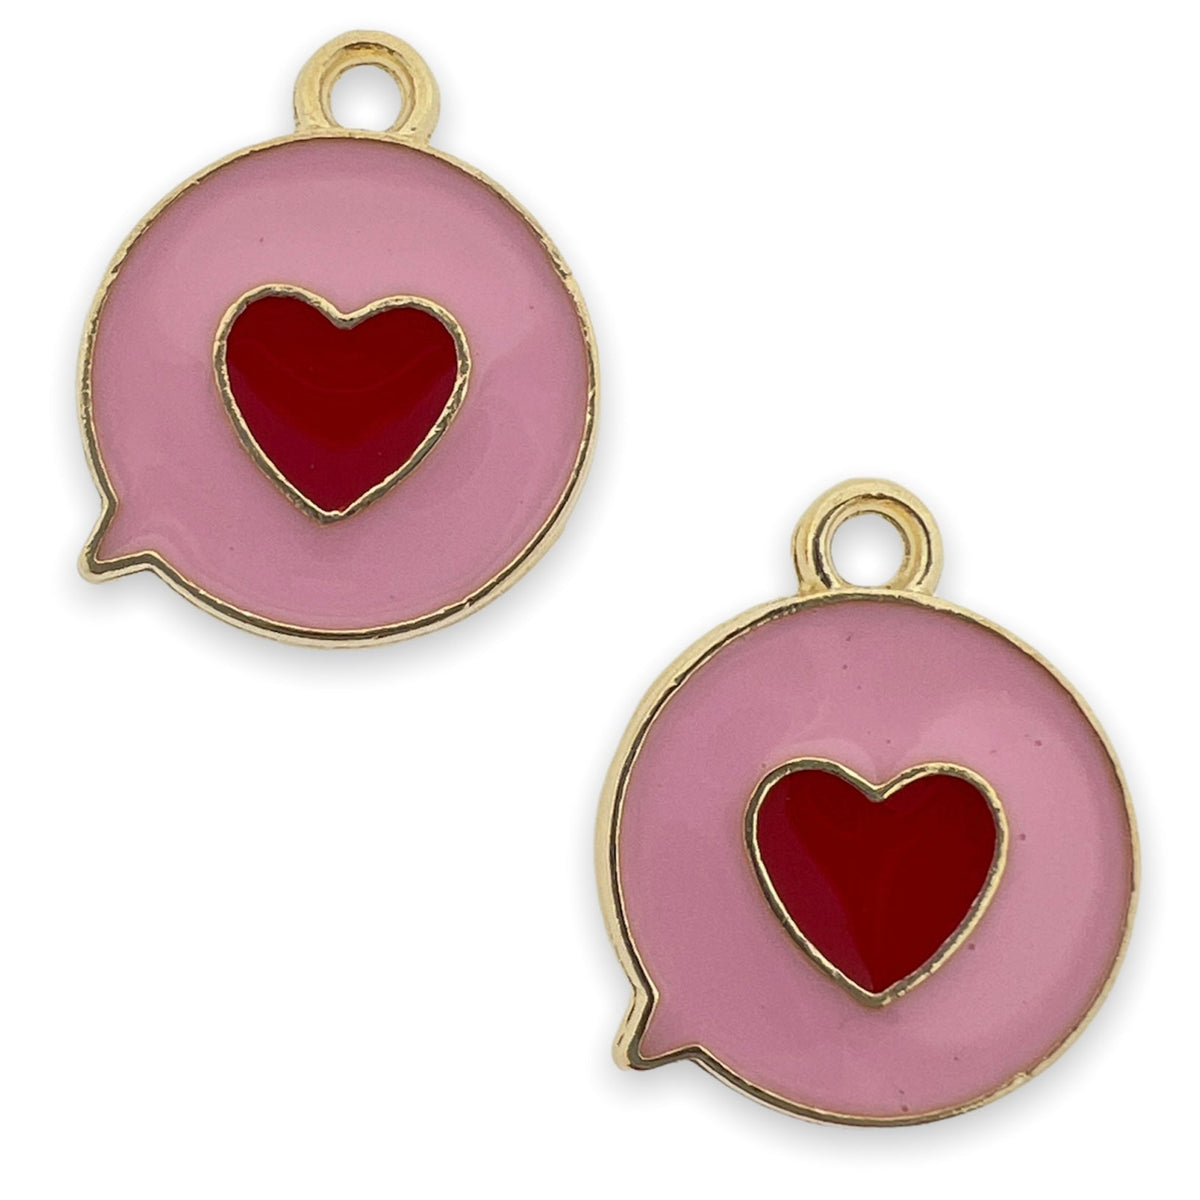 Bedel emaille hart rood-roze goud 17x14mm-bedels-Kraaltjes van Renate